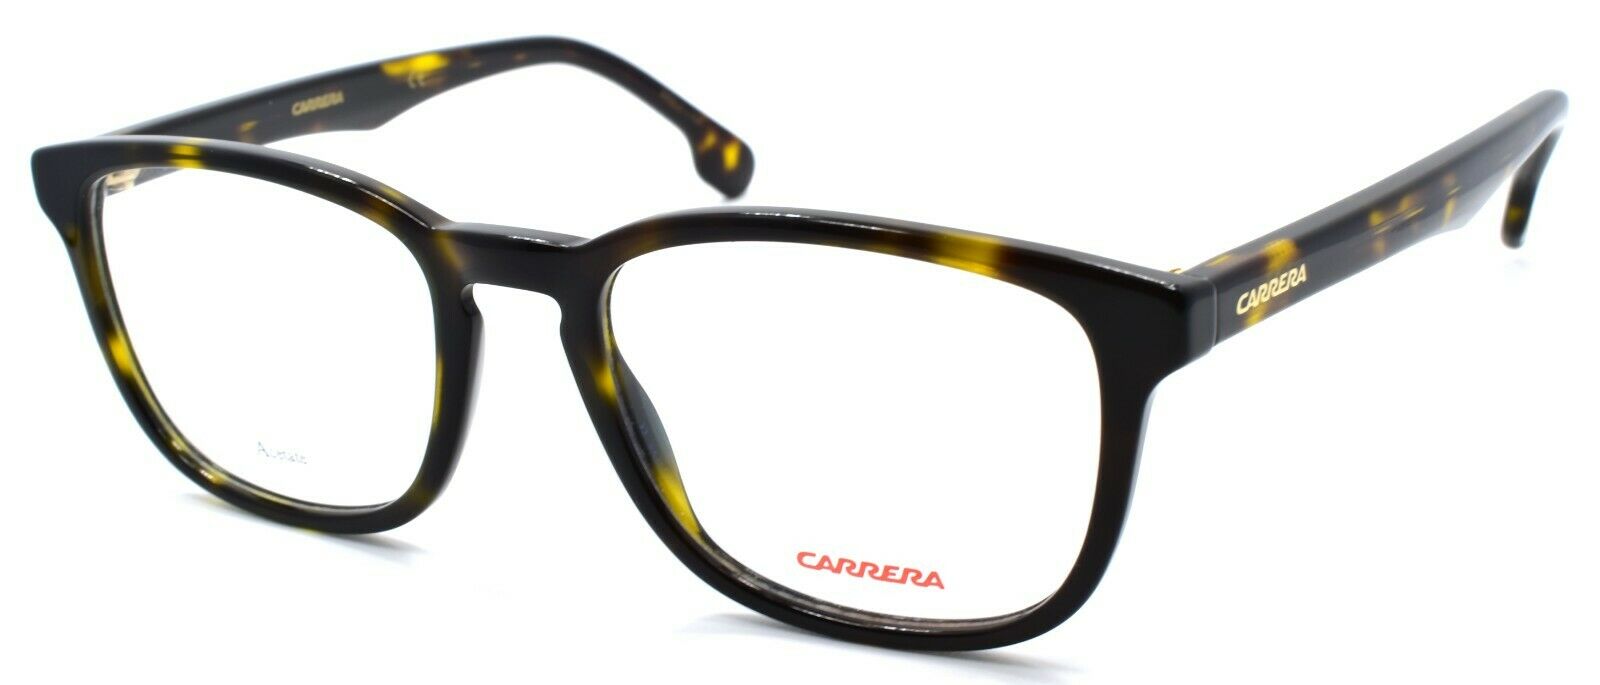 1-Carrera 148/V 086 Men's Eyeglasses Frames 50-19-145 Dark Havana-762753120397-IKSpecs